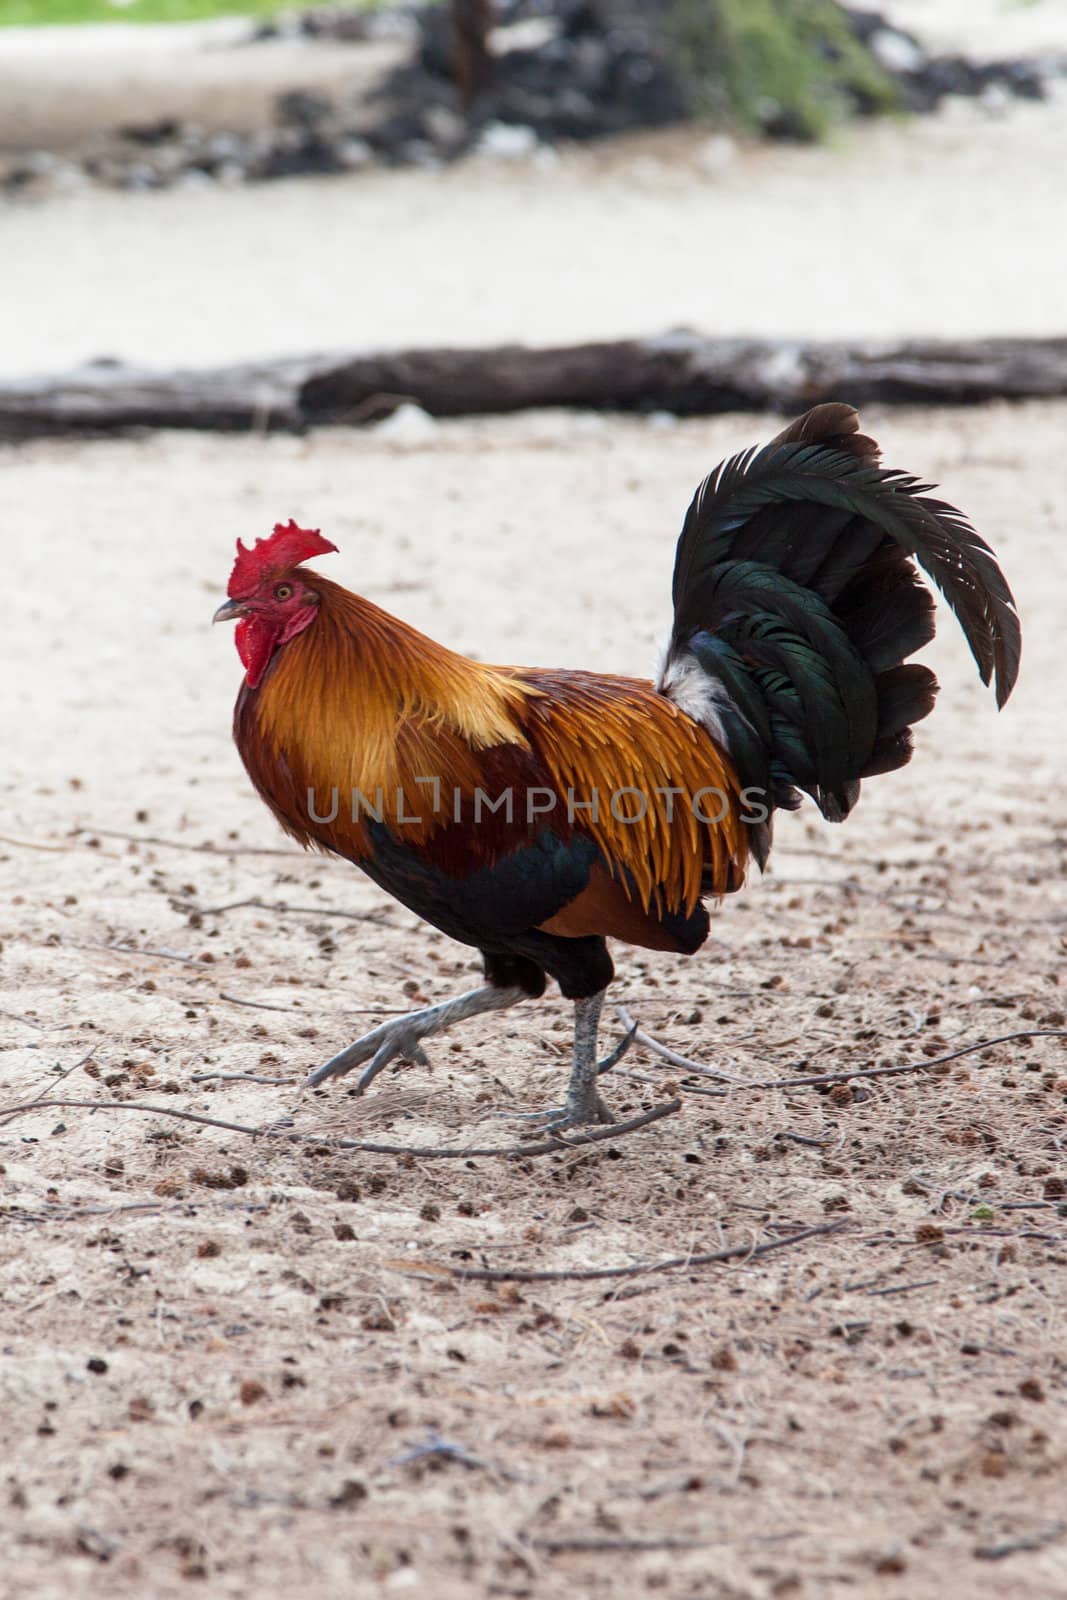 A wild rooster walks along a beach